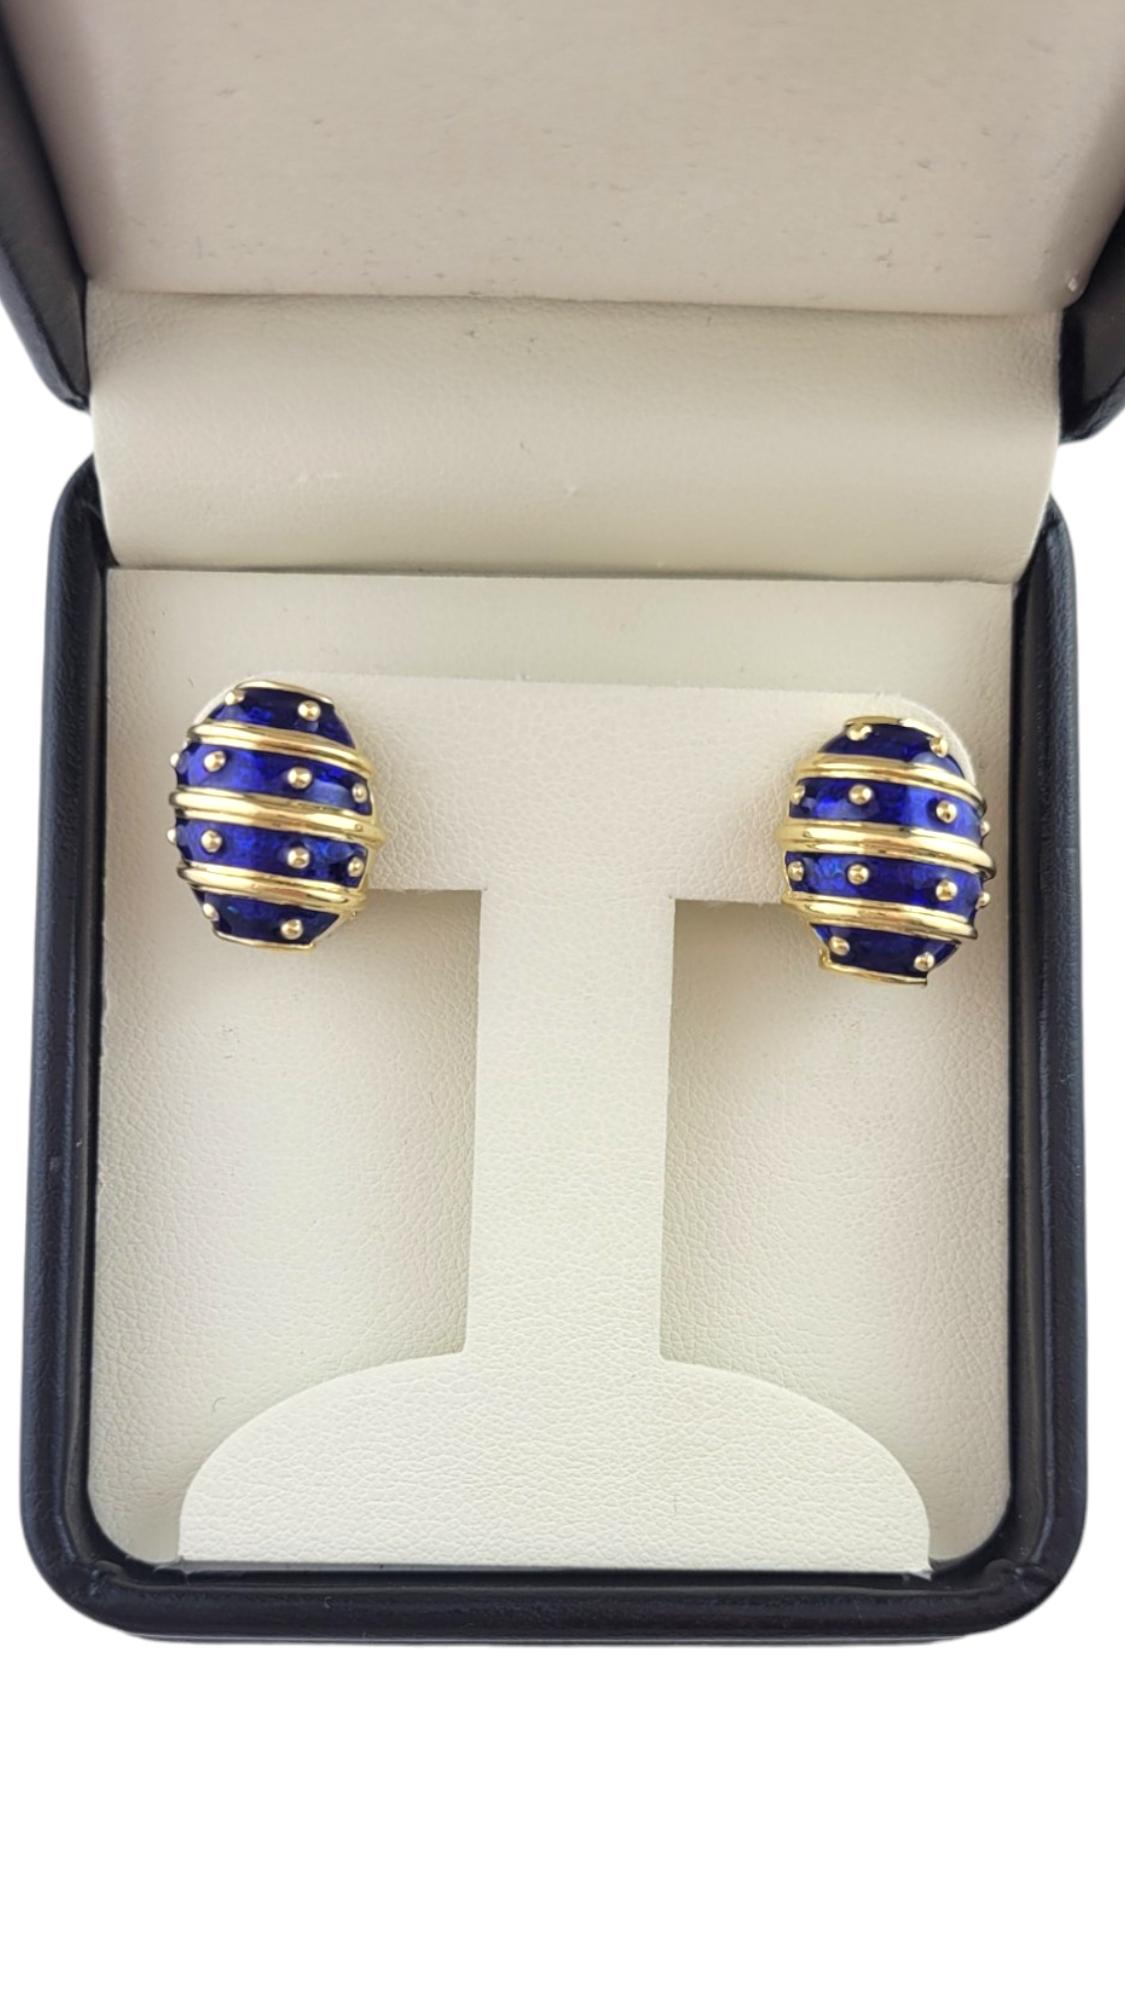 Hidalgo 18K Yellow Gold Blue Enamel Earrings #16089 For Sale 2